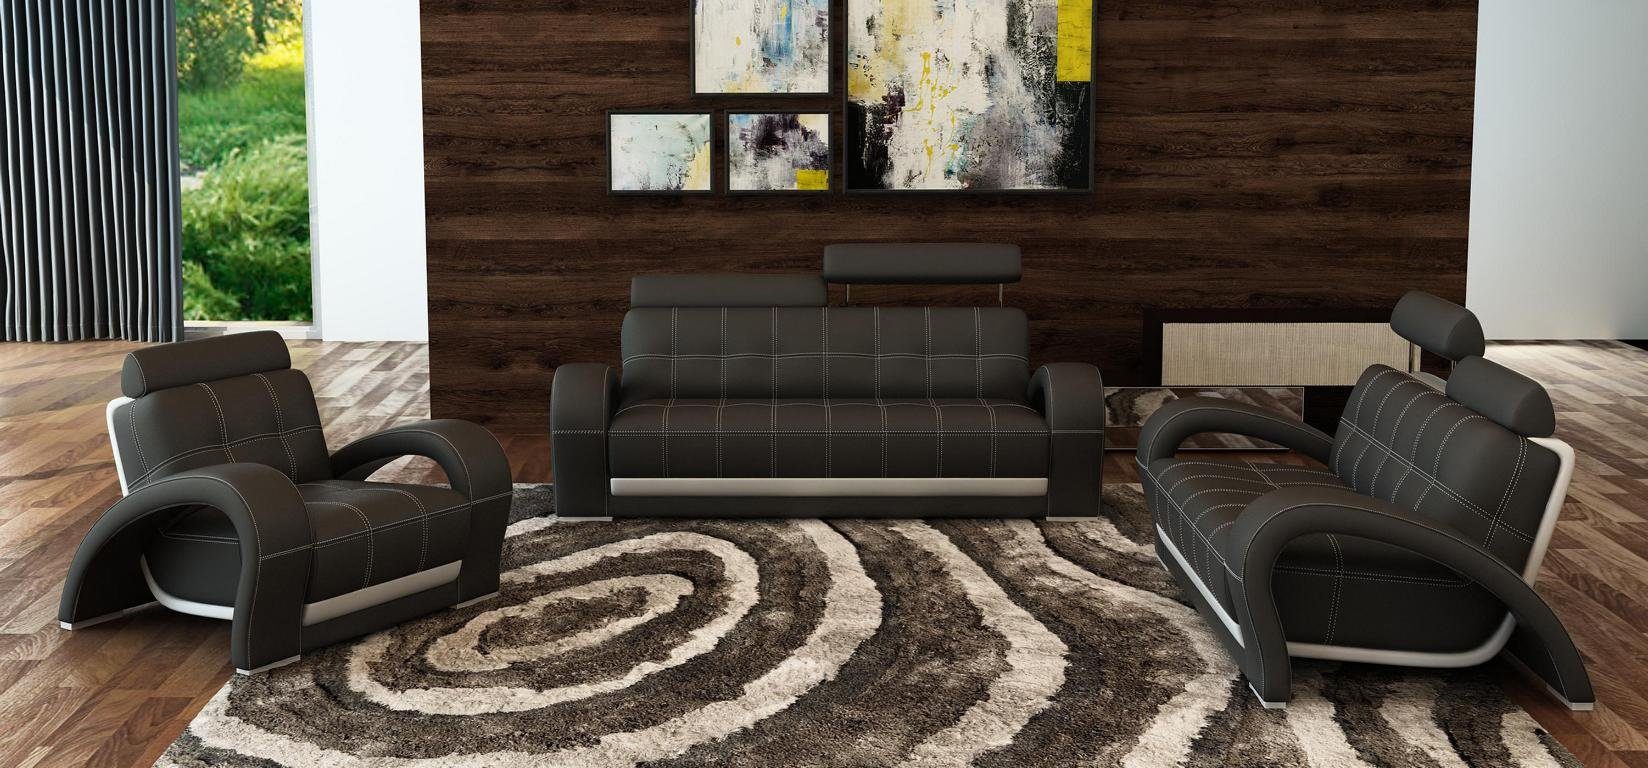 Garnituren Sofa Couch Set, Europe JVmoebel Sofagarnitur Couch Wohnzimmer in Made Leder